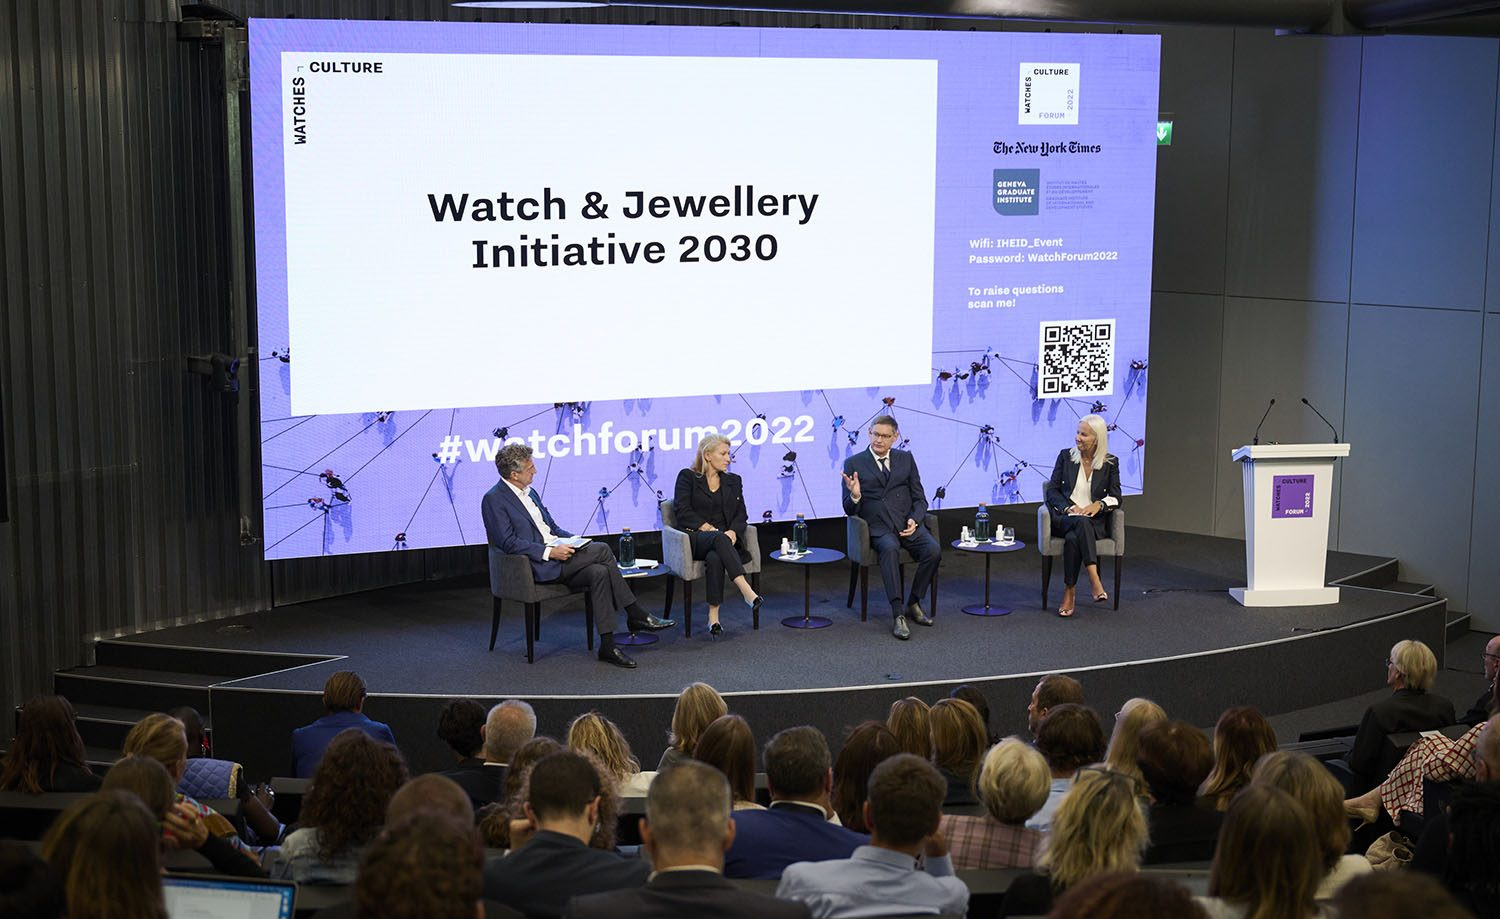 Governance - Watch & Jewelry Initiative 2030